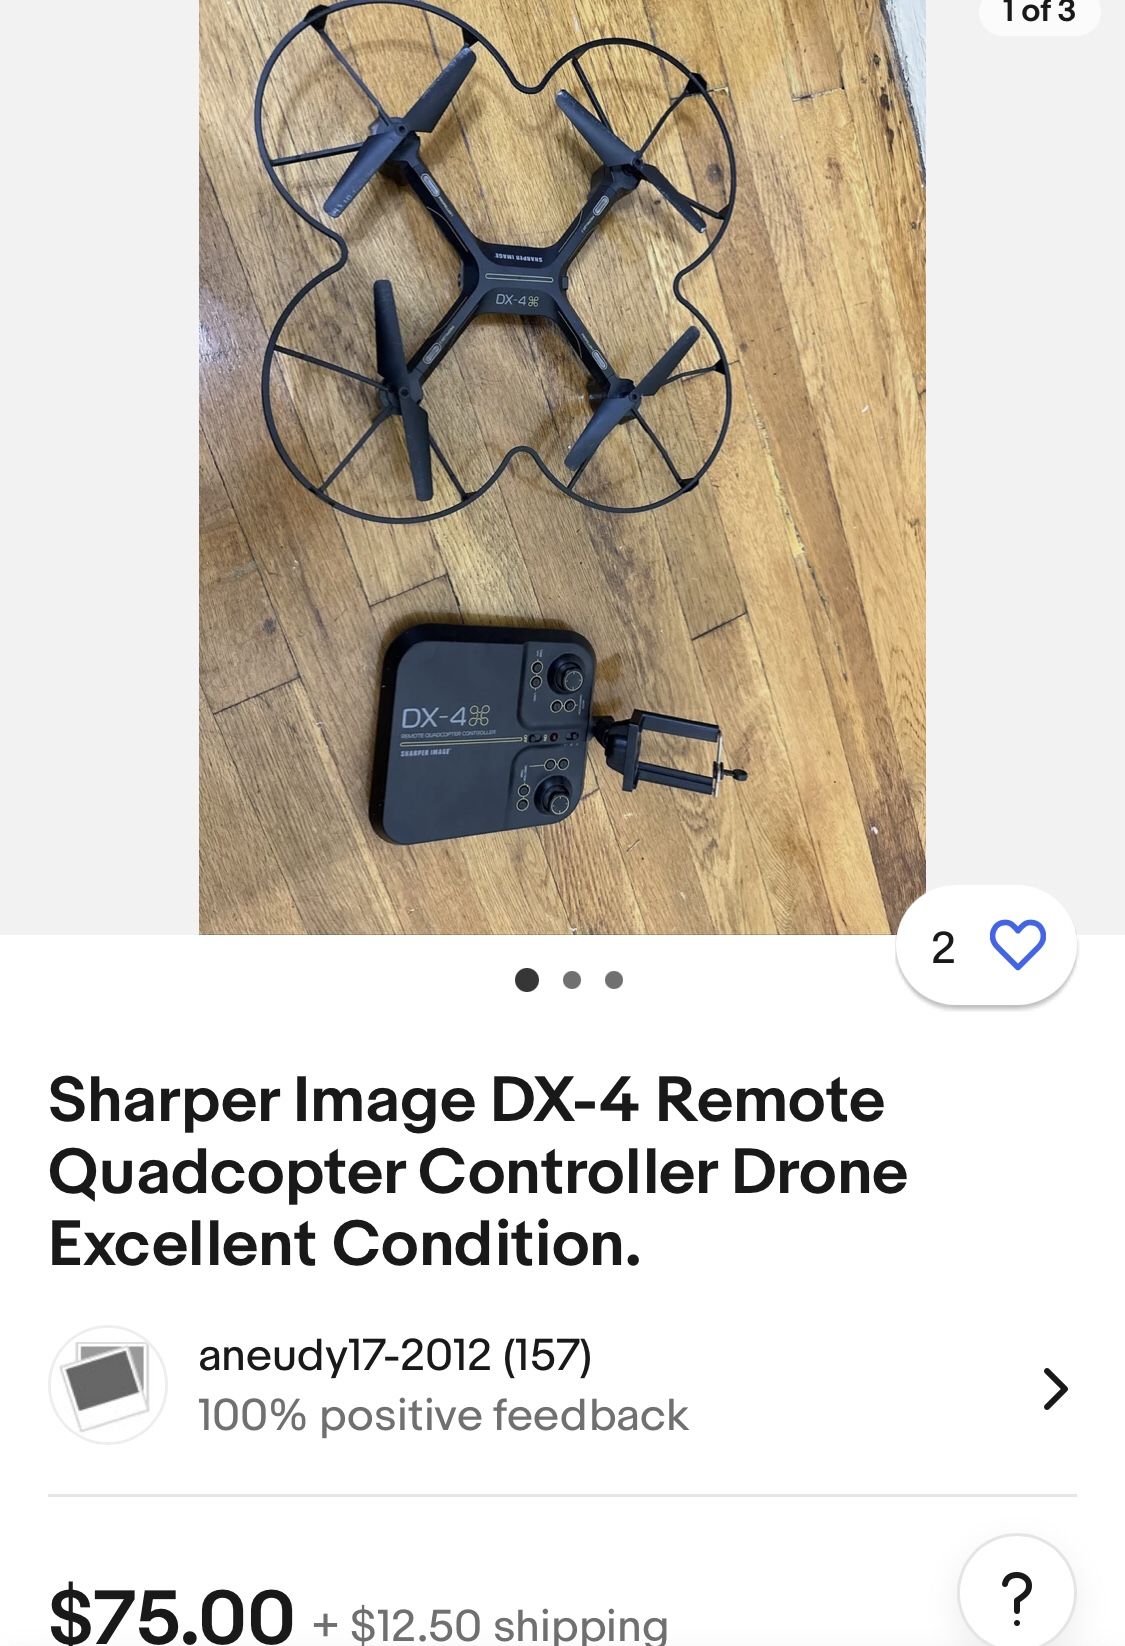 Sharper Image Drone W/Remote $25